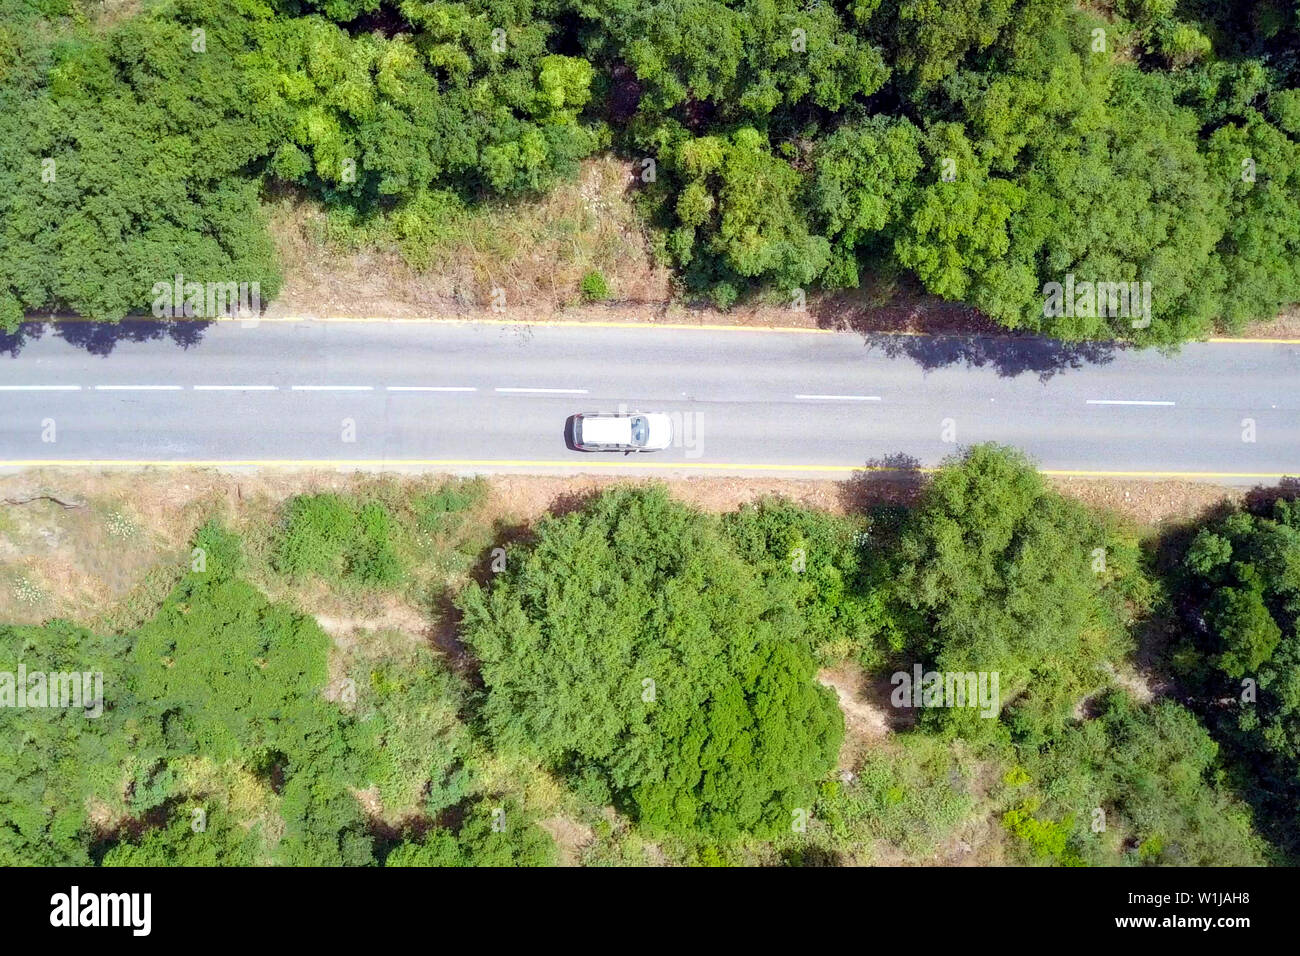 Imagen aérea del tráfico en una carretera forestal de montaña. Foto de stock